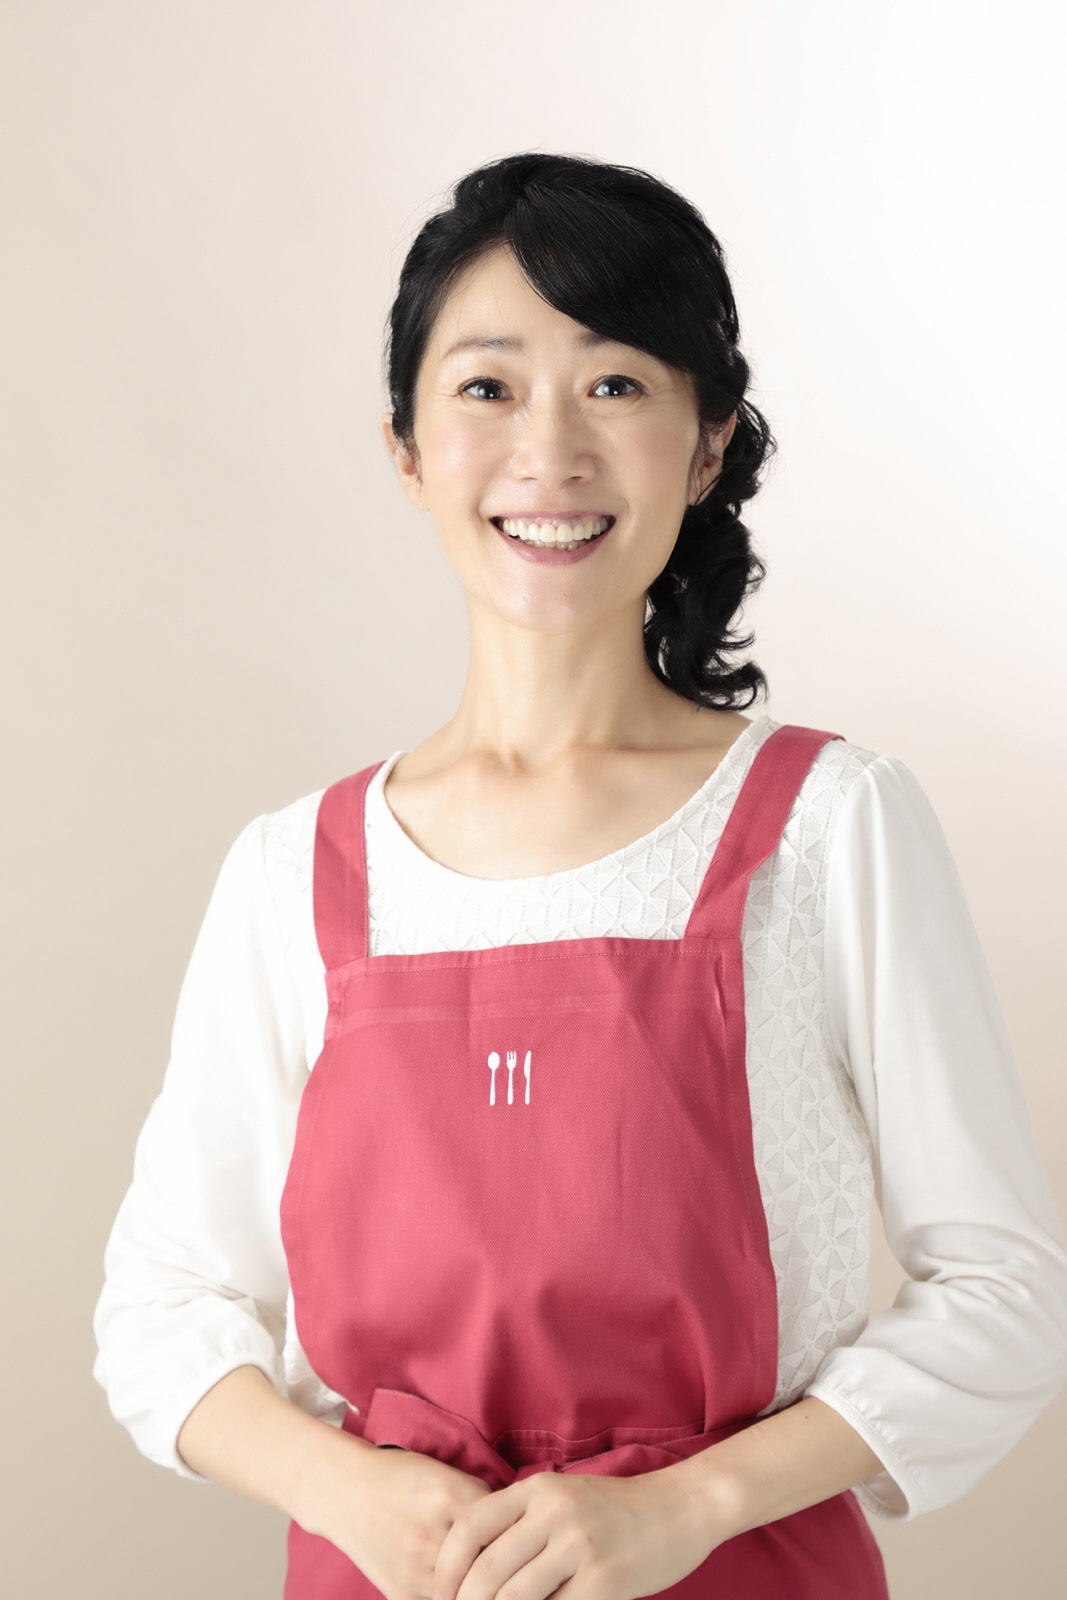 株式会社オフィスRM代表取締役・管理栄養士の今泉 マユ子さんの写真